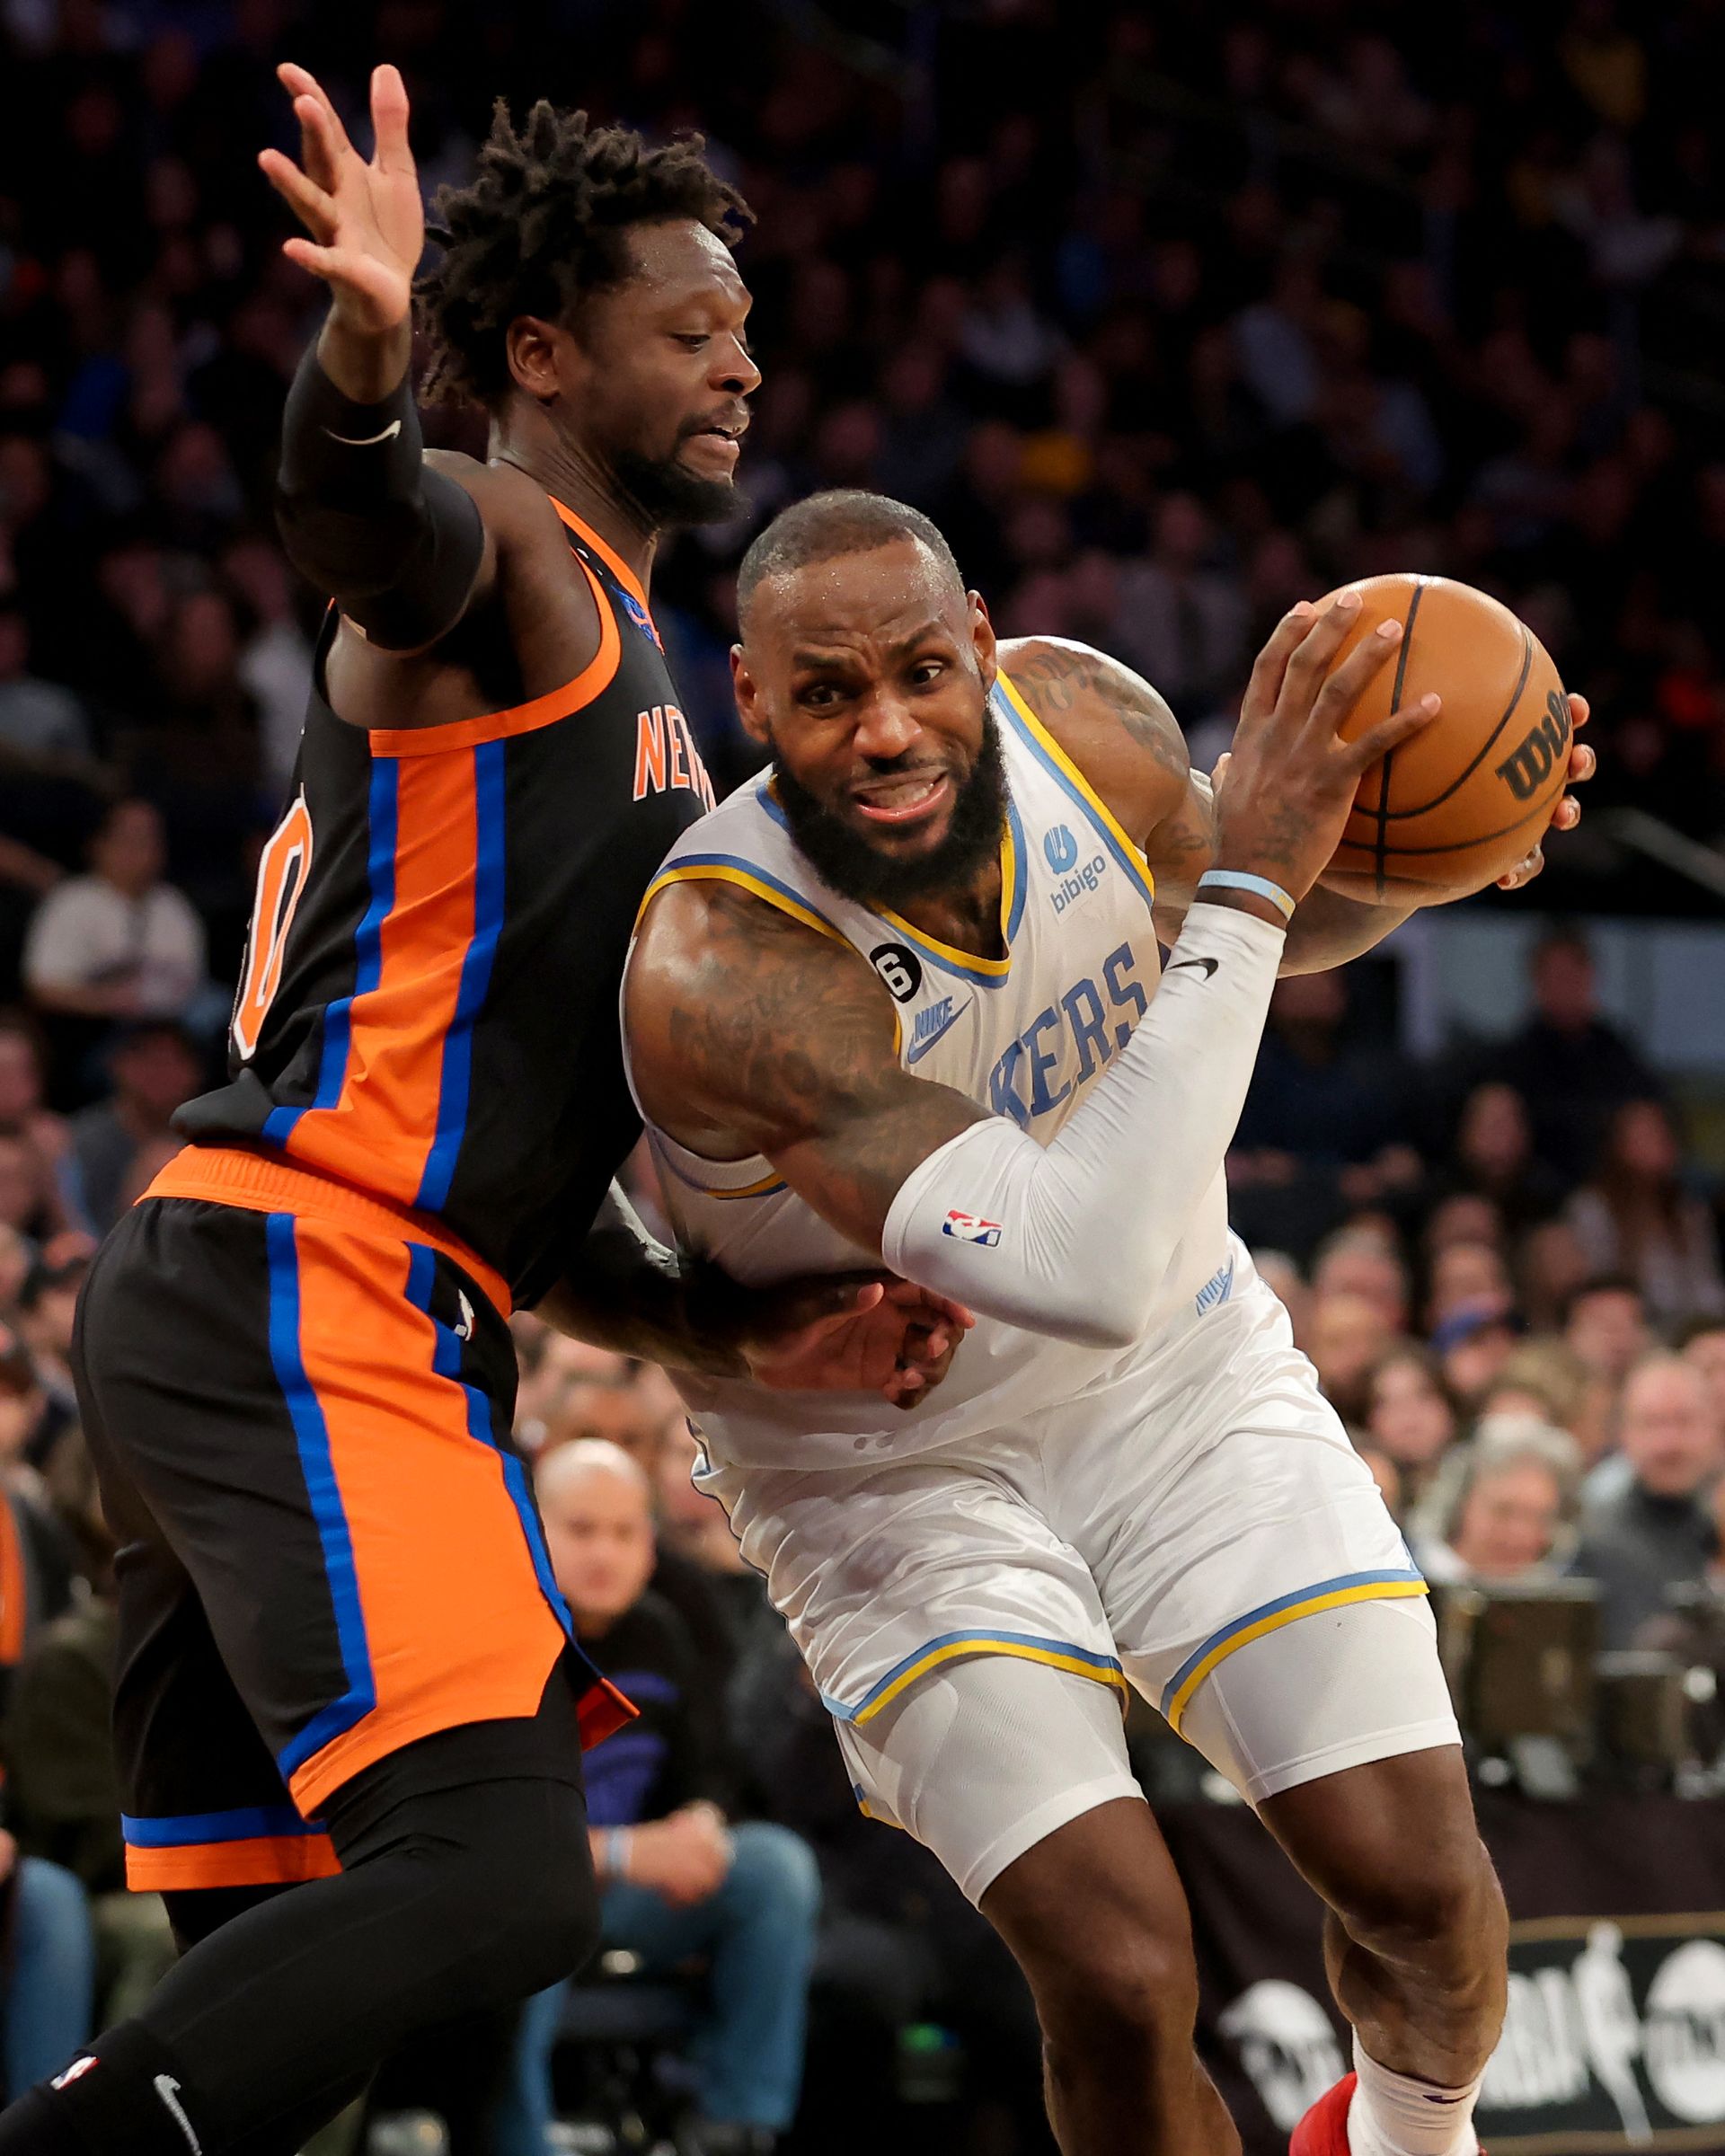 En mann med kort hår og hvit drakt som det står "Lakers" på, holder en basketball og løper forbi en annen spiller som prøver å stanse ham.